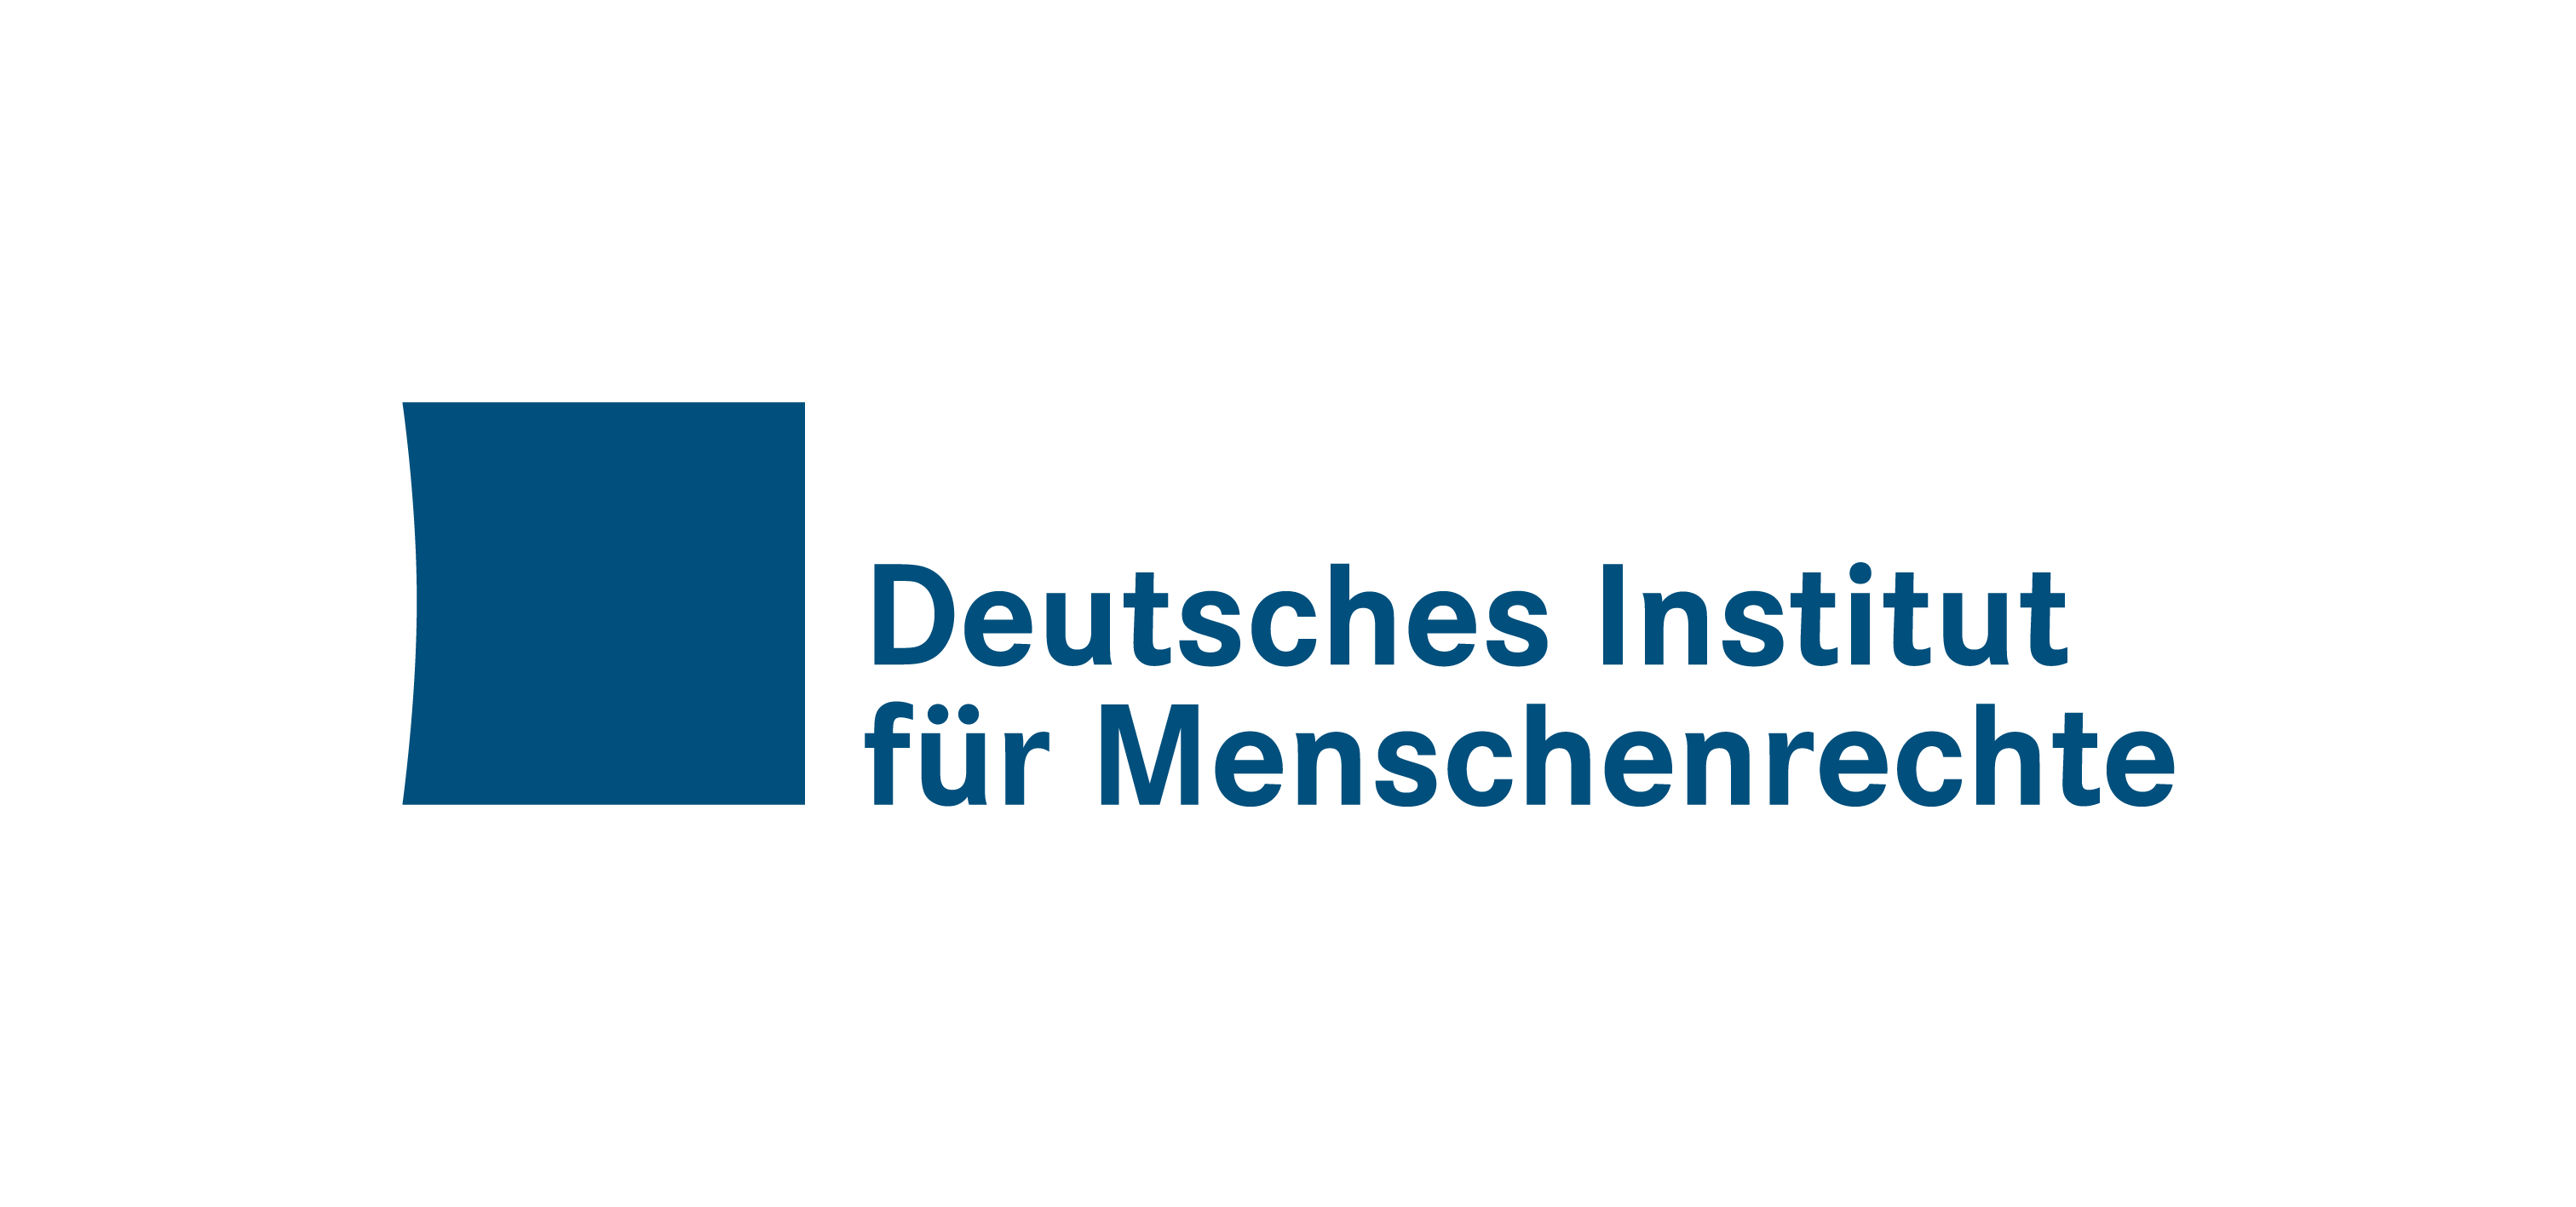 Association Deutsches Institut für Menschenrechte e.V.